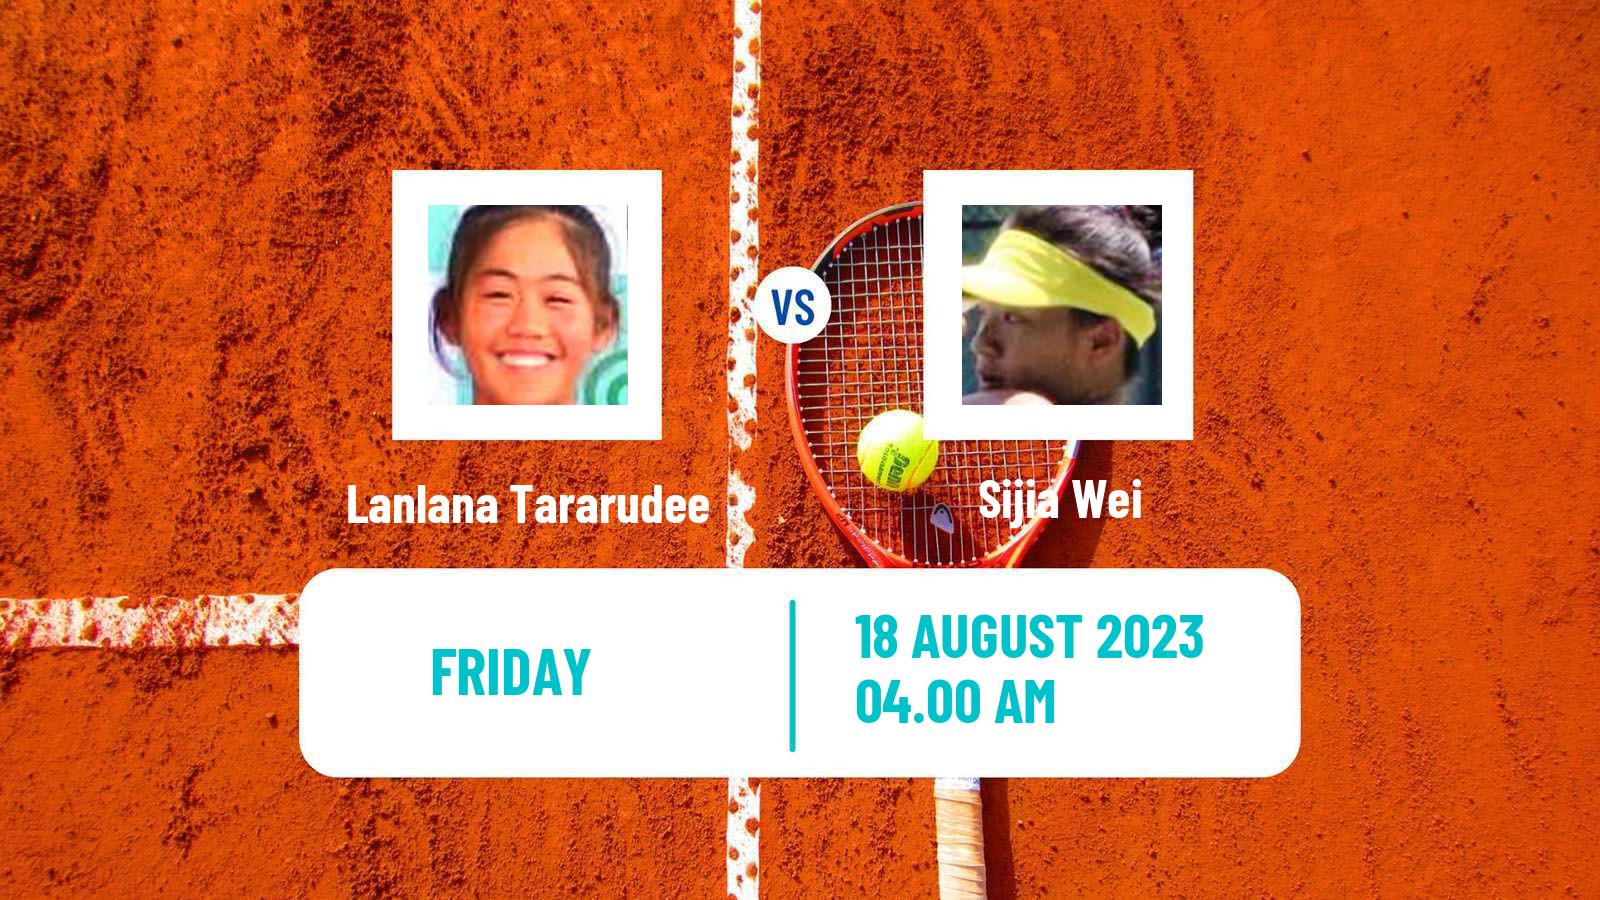 Tennis ITF W40 Nanchang Women Lanlana Tararudee - Sijia Wei